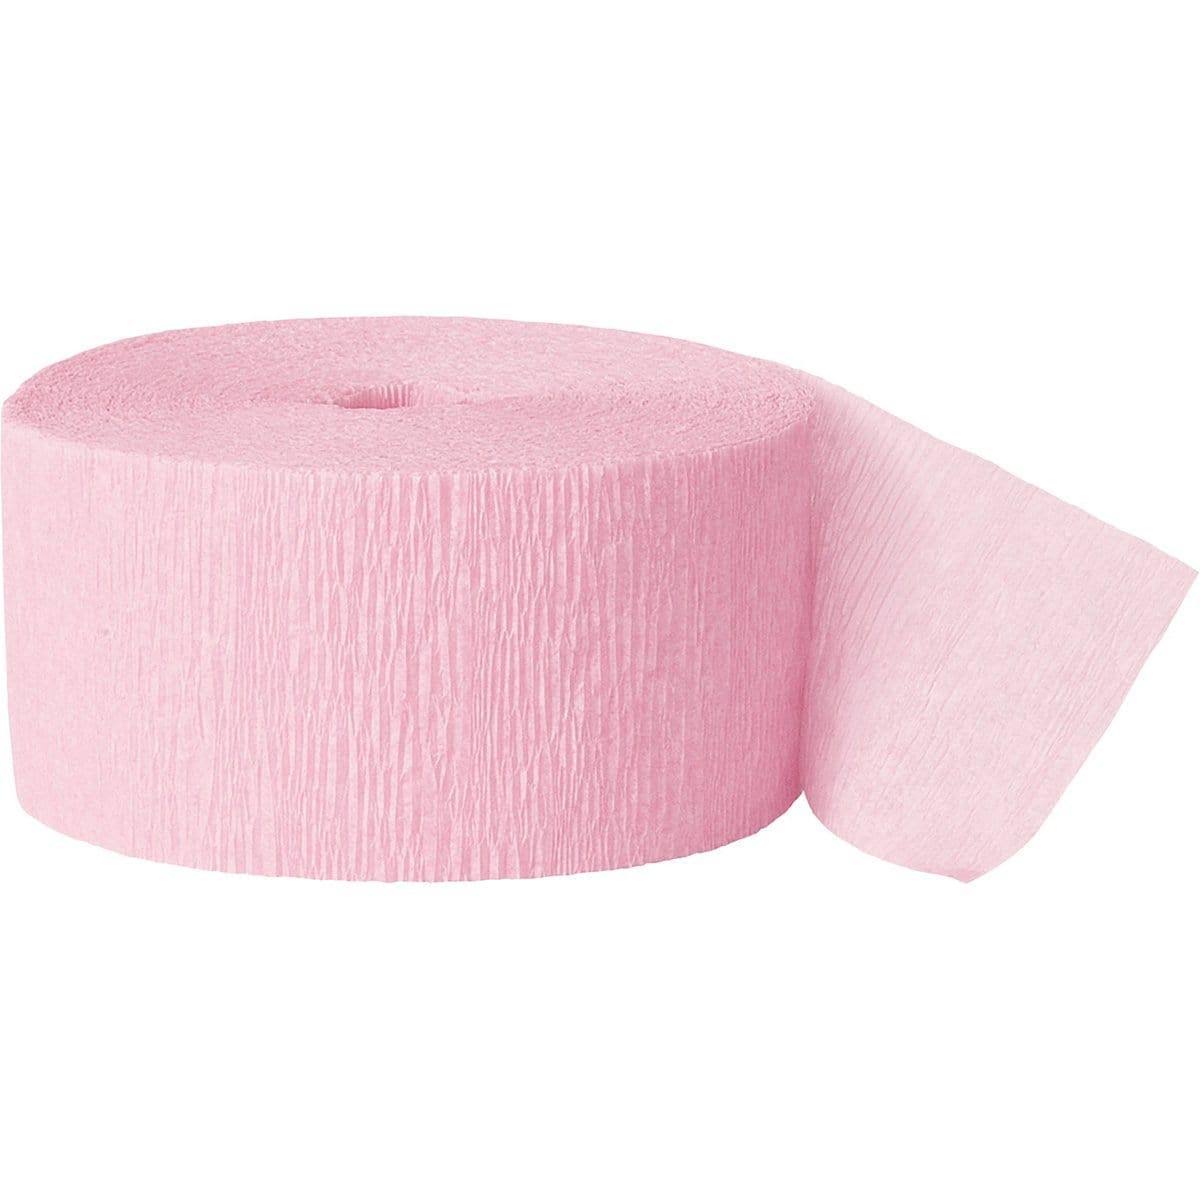 Unique Industries Crepe Paper - Pink